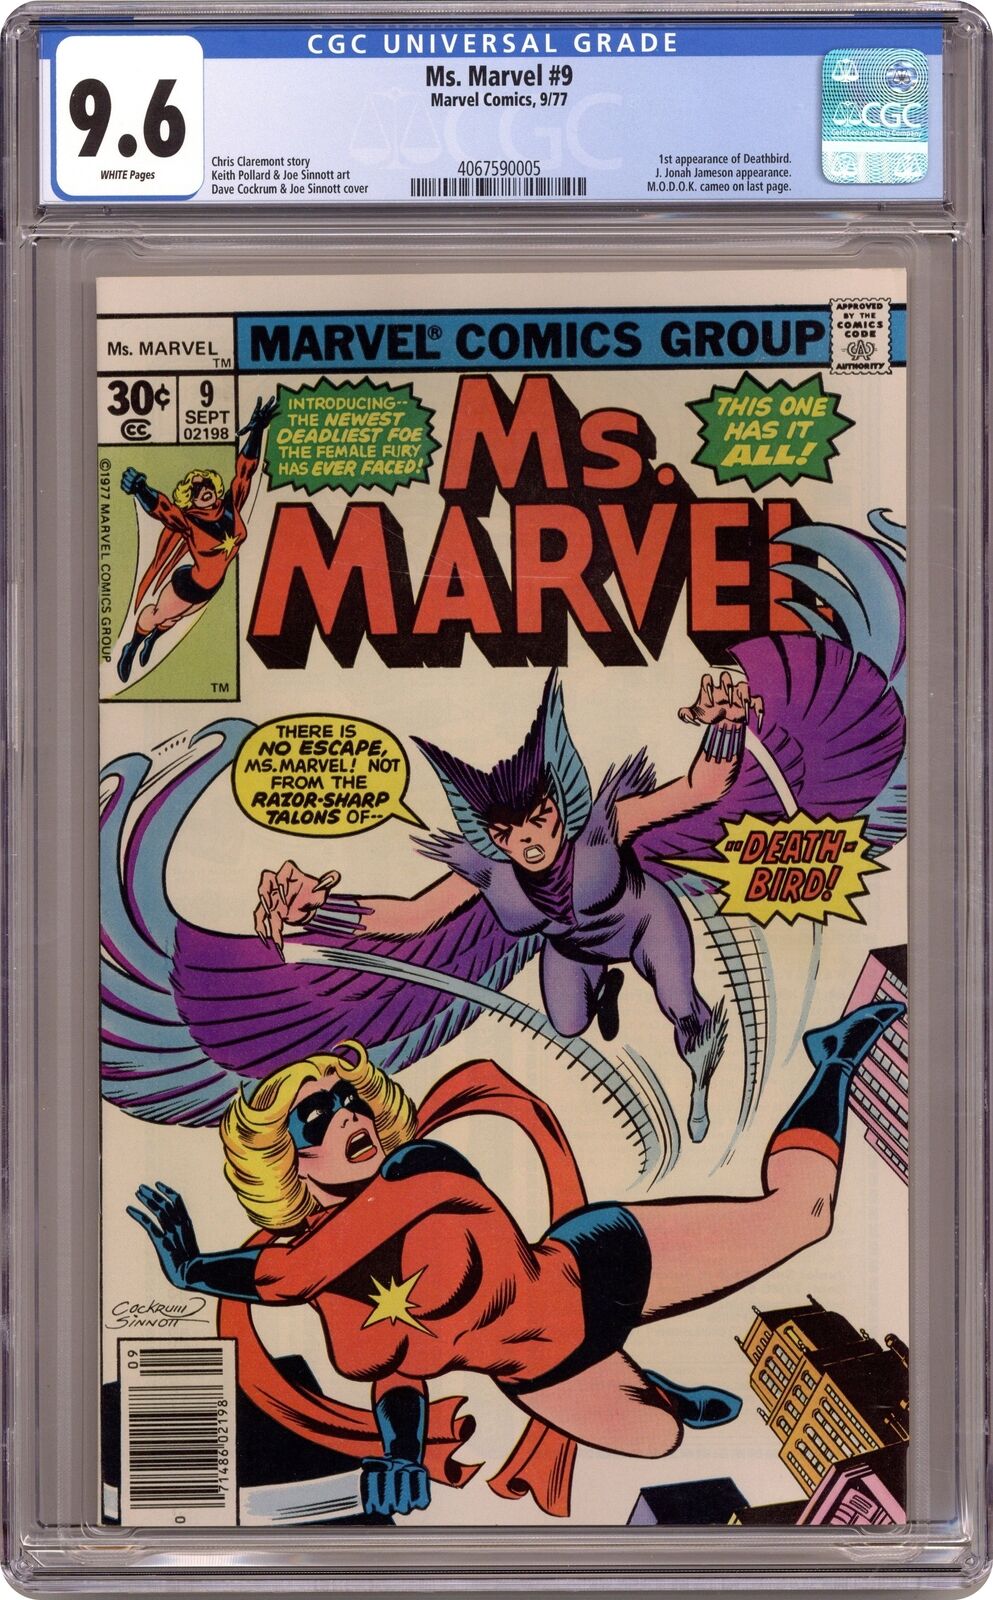 Ms. Marvel #9 CGC 9.6 1977 4067590005